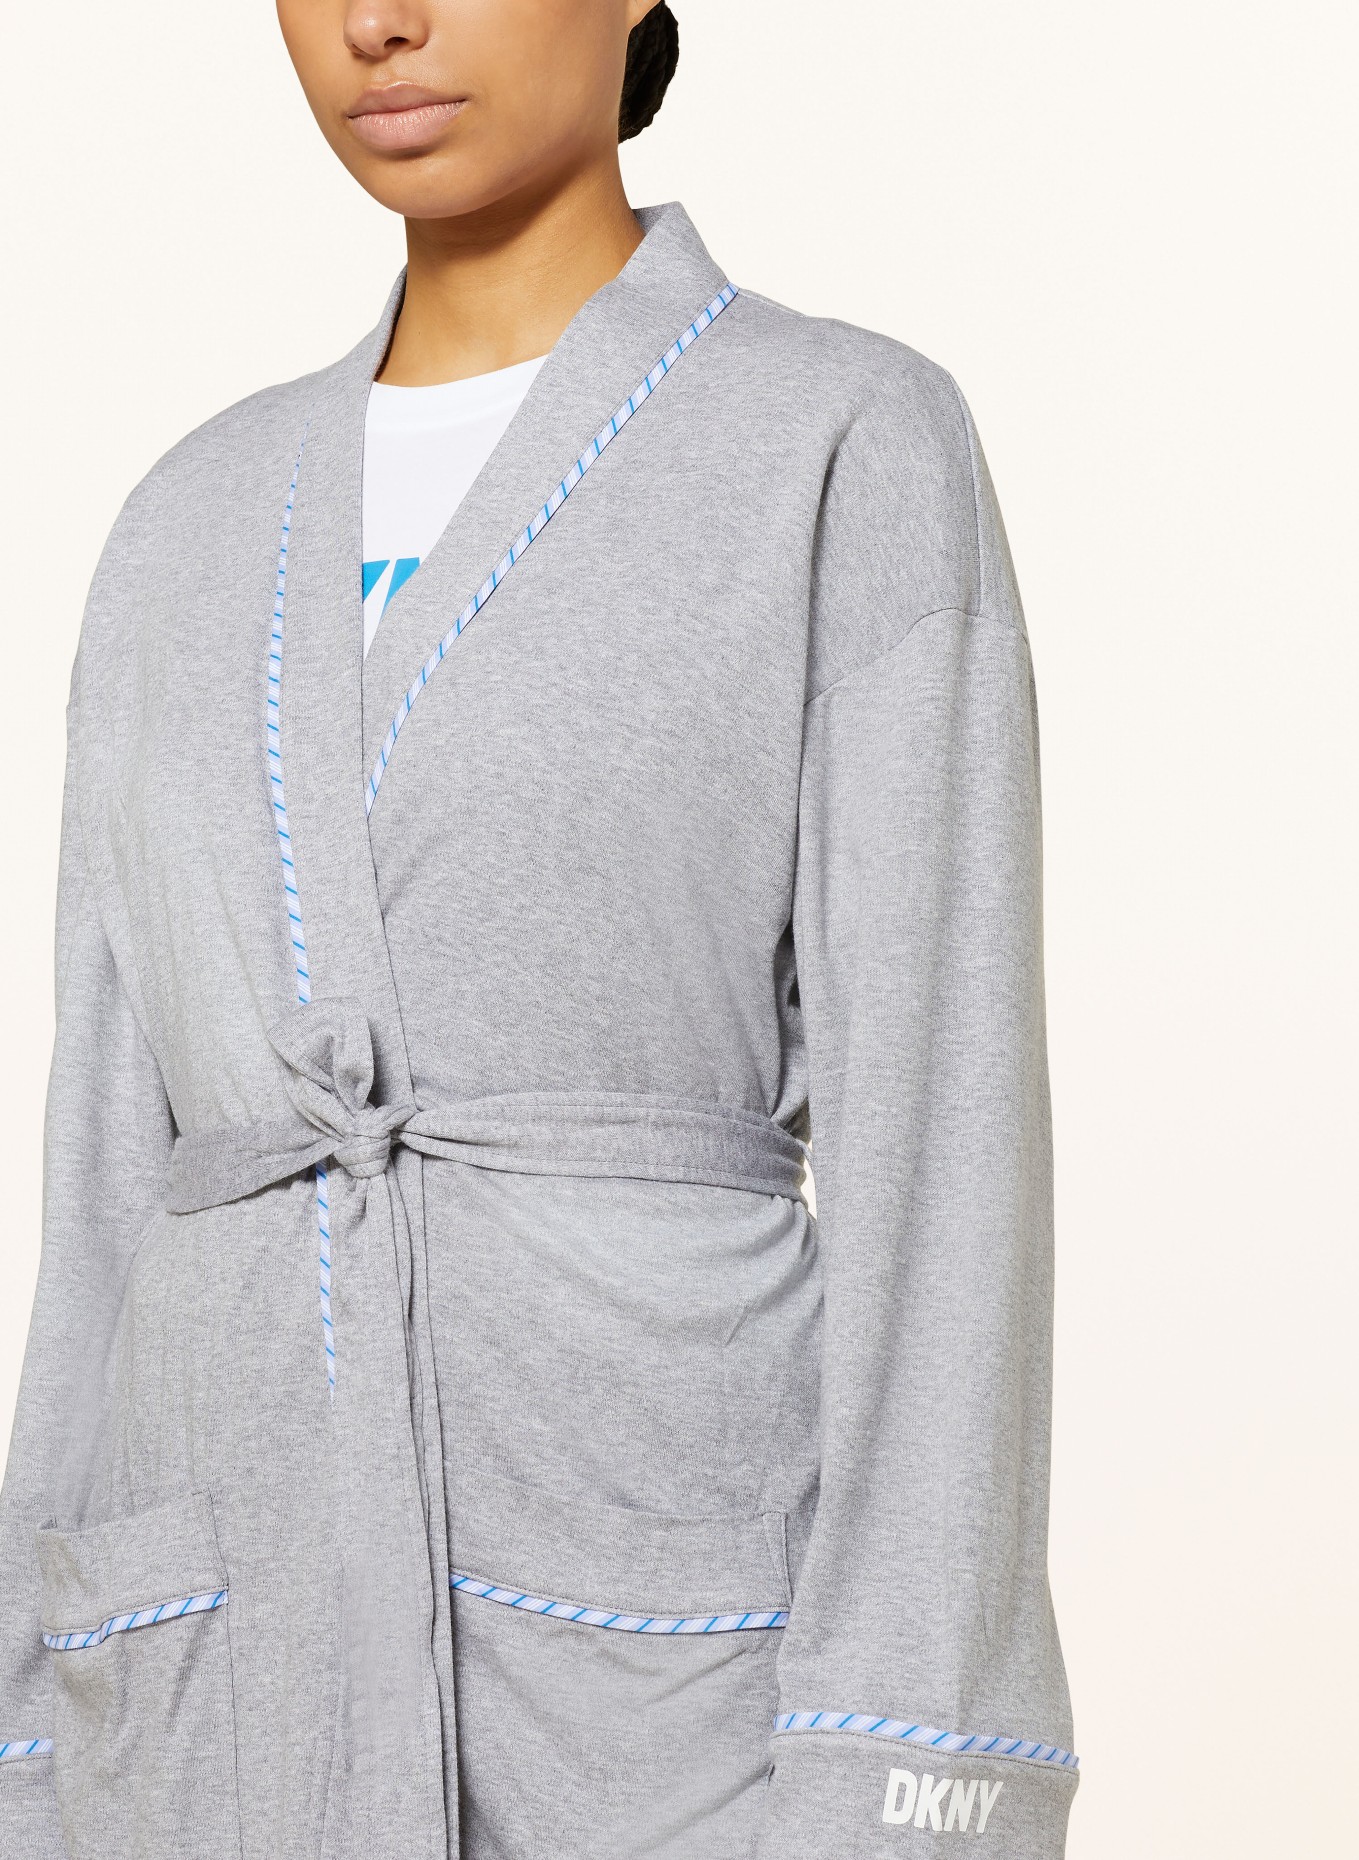 DKNY Women’s bathrobe, Color: GRAY (Image 4)